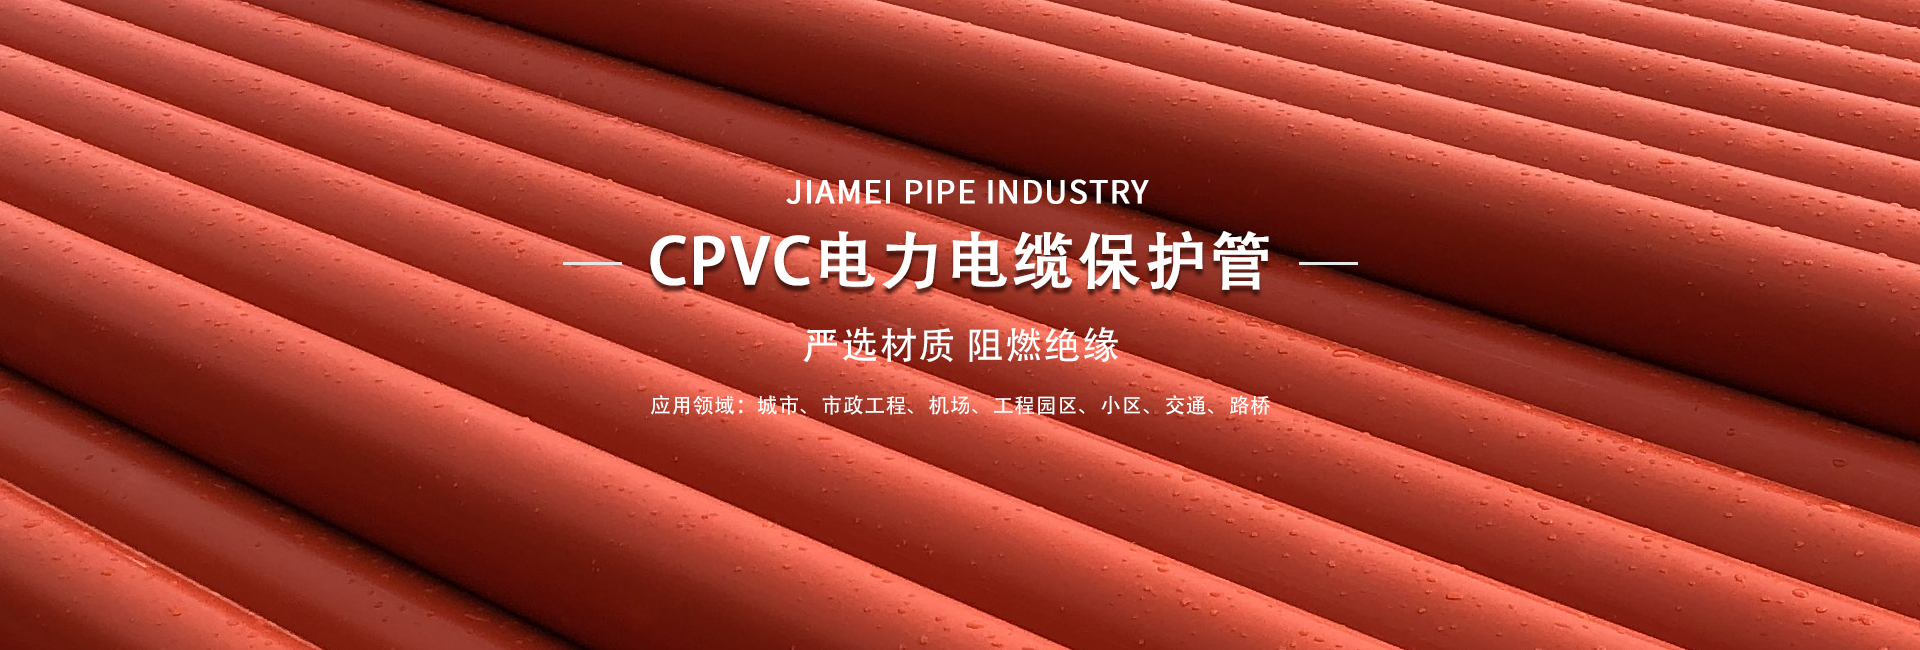 cpvc電力管的優點是什么?